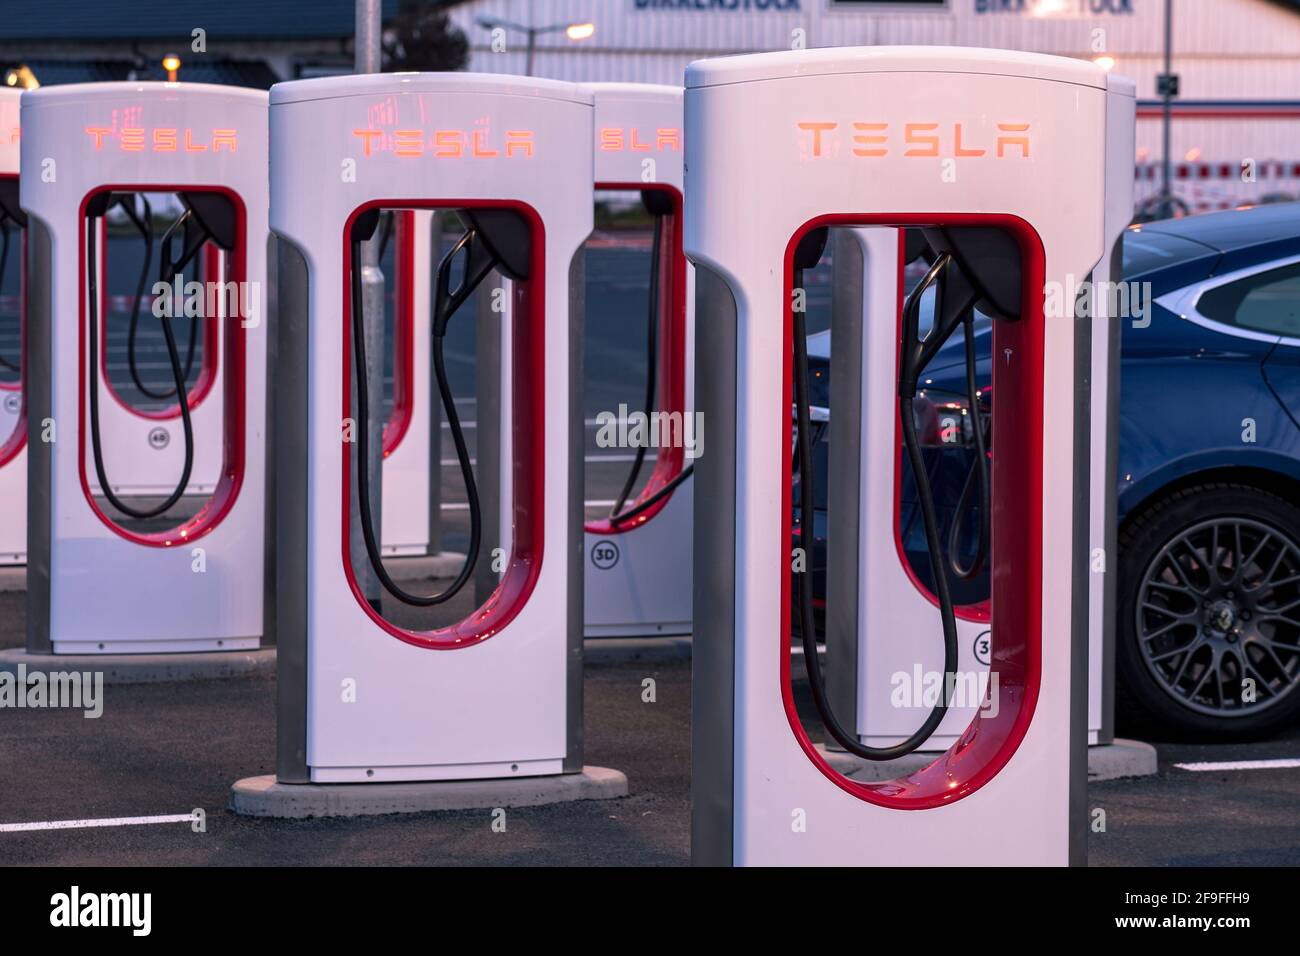 Station de charge du compresseur pour les véhicules électriques Tesla, Tesla modèle S, Frechen, Rhénanie-du-Nord-Westphalie, Allemagne. T. De l'outil de lestation du compresseur de suralimentation Banque D'Images